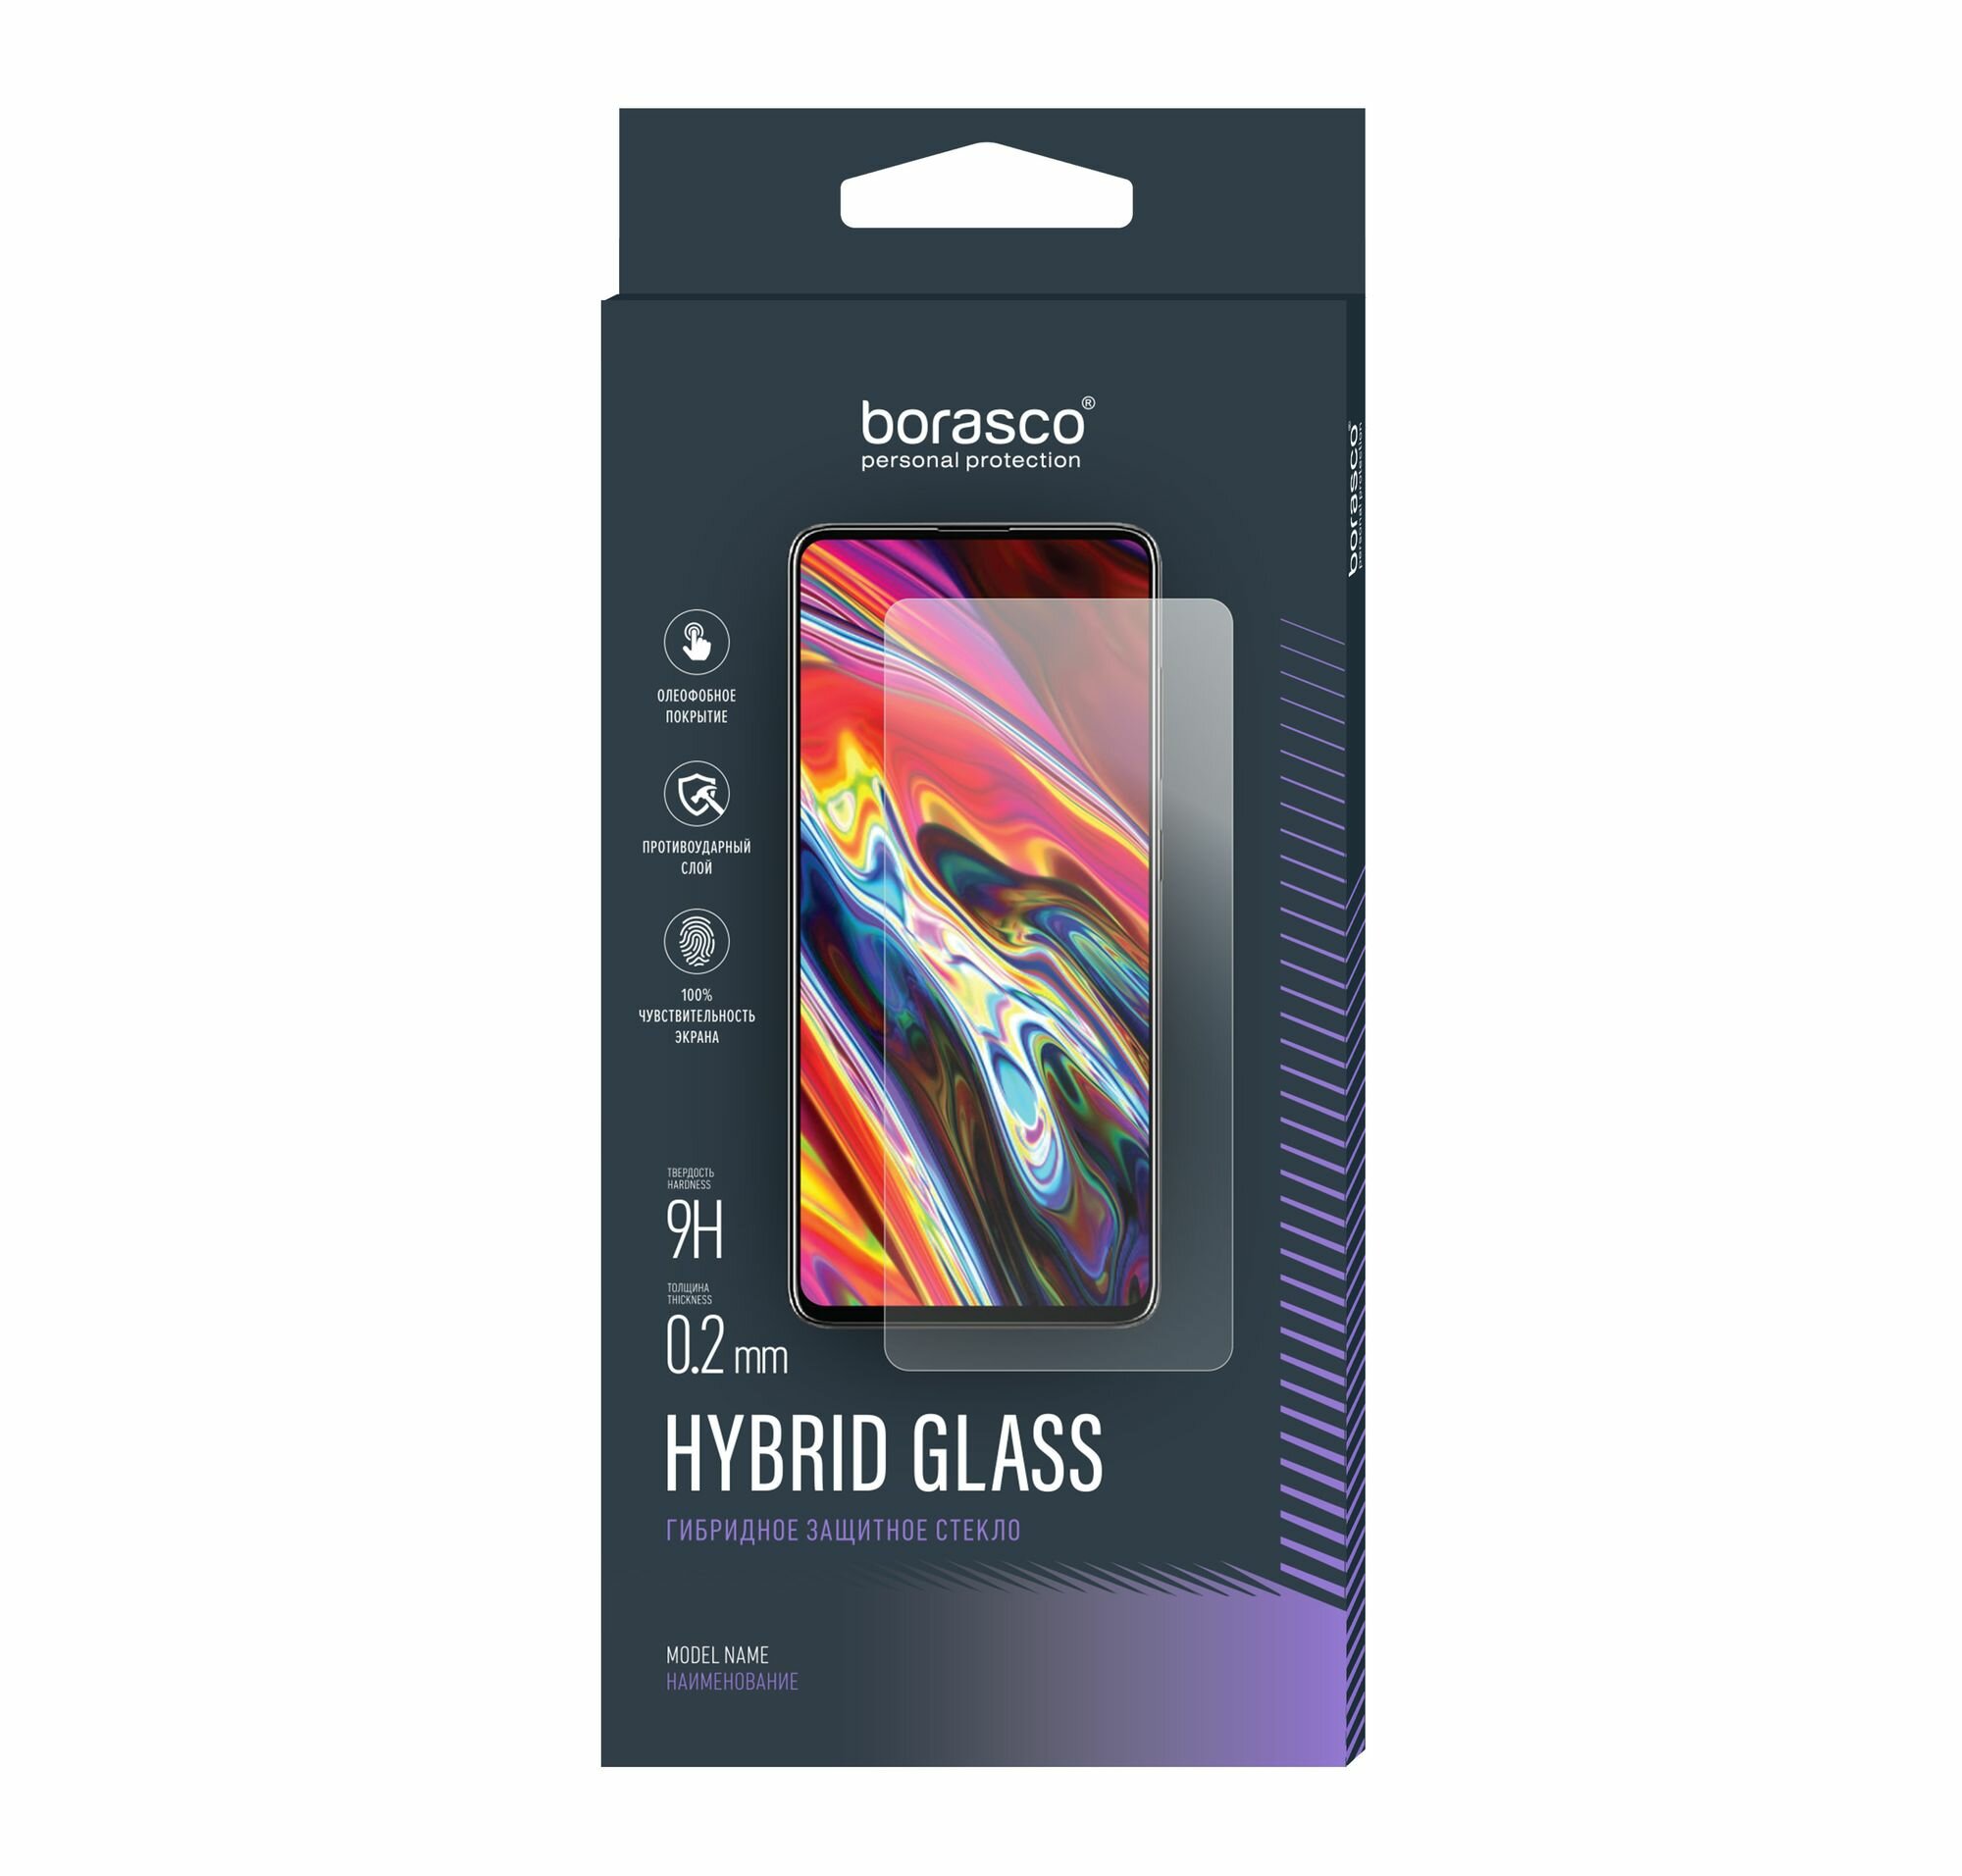 Стекло защитное Hybrid Glass VSP 026 мм для Apple iPad mini mini 2/3